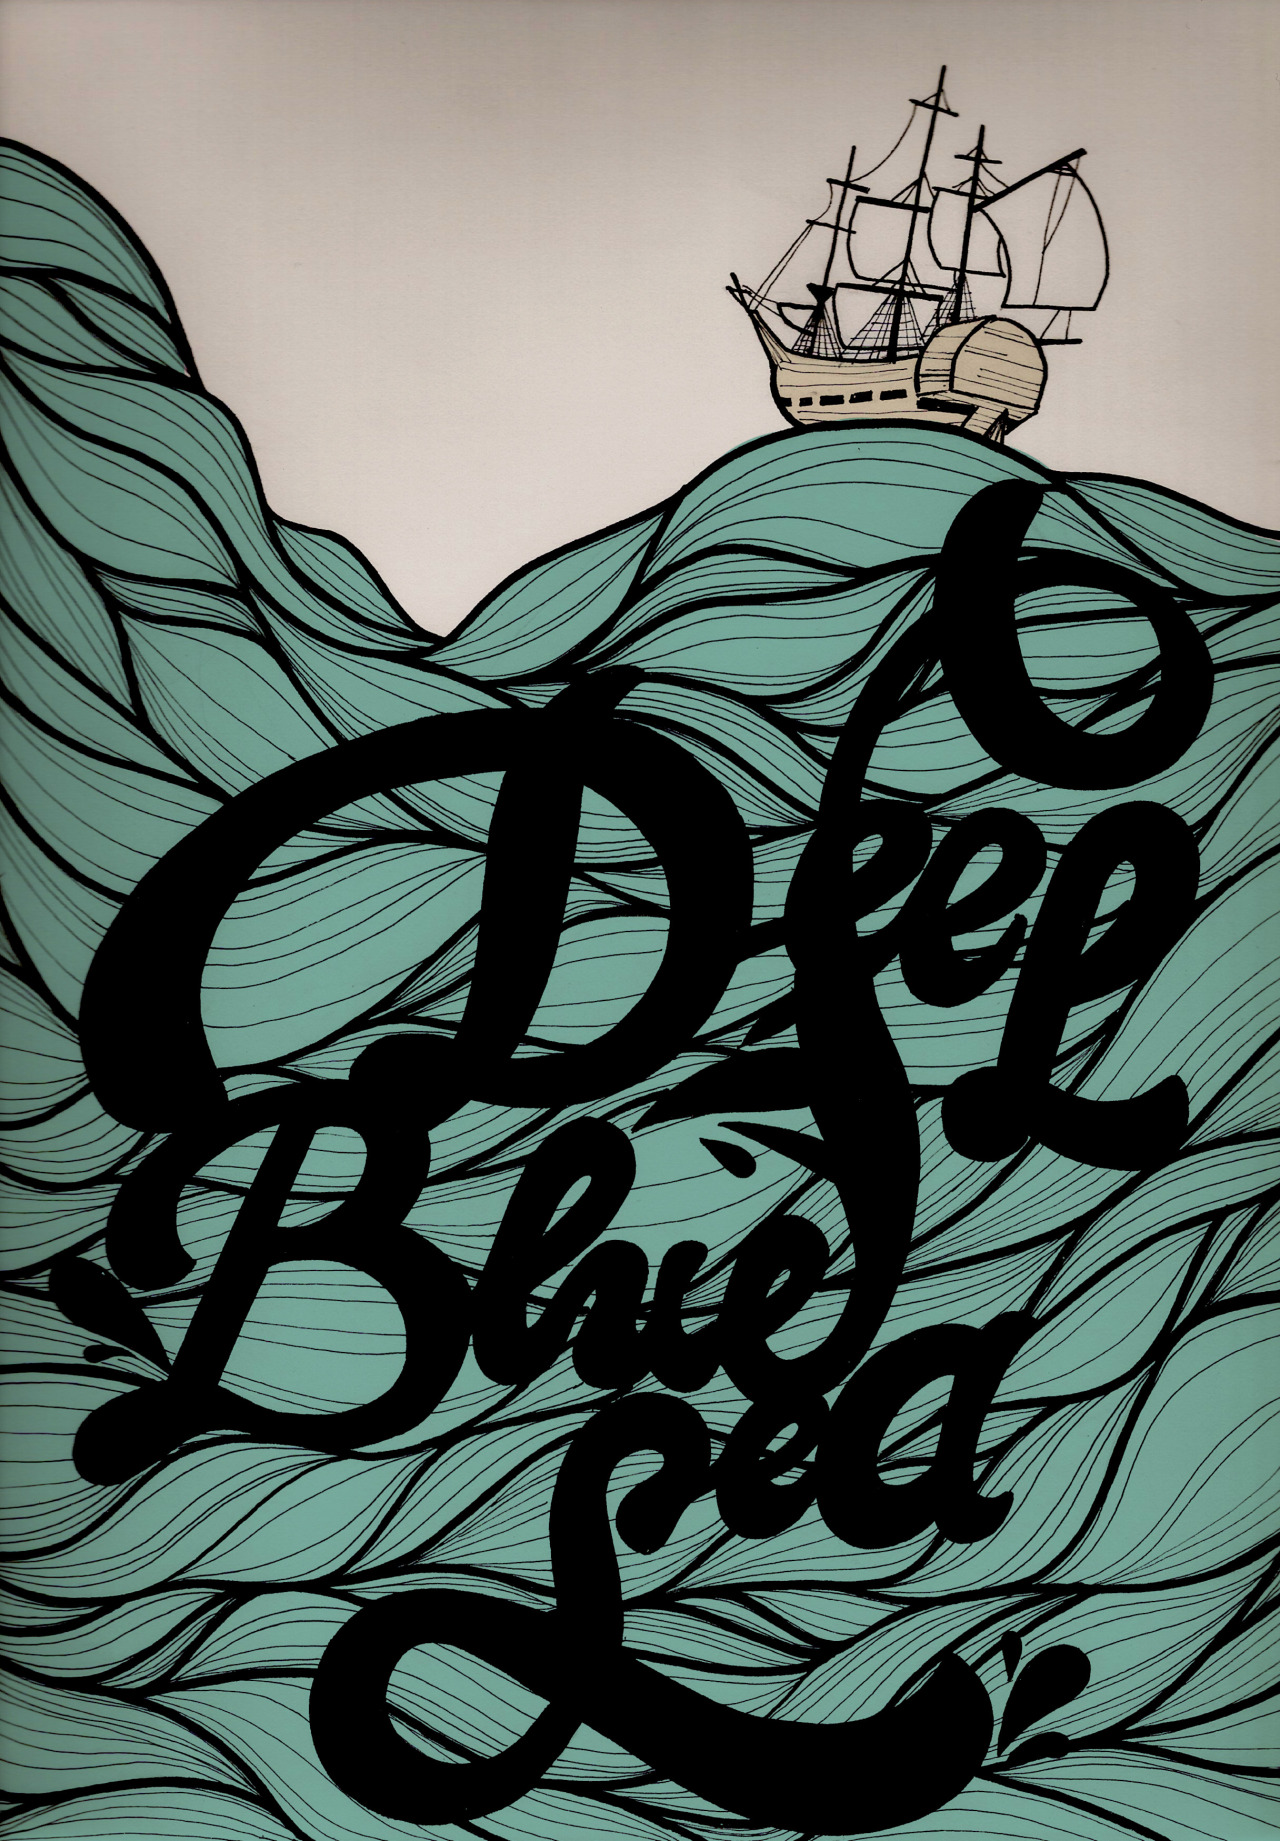 Deep Blue Sea. auderobertgingras.com http://www.facebook.com/audergdesignergraphique